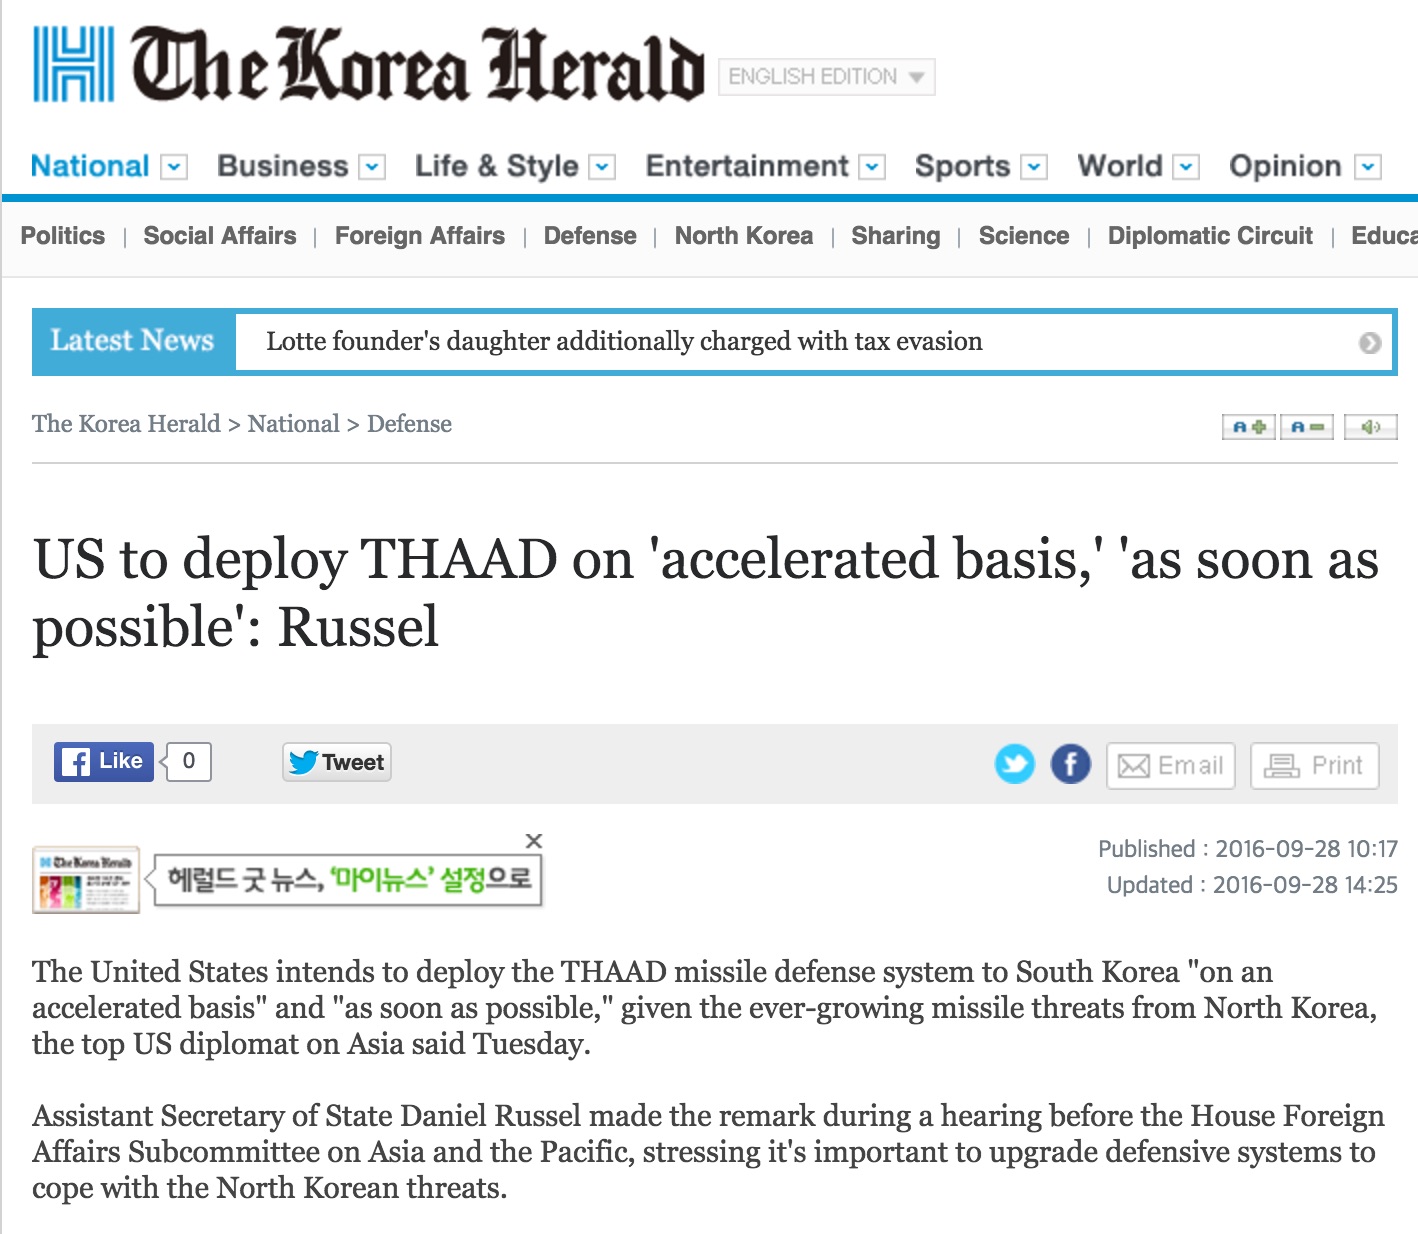 Le système antimissile THAAD verra t-il bientôt le jour en Corée su Sud ? Copie d'écran du Korea Herald, le 28 septembre 2016.